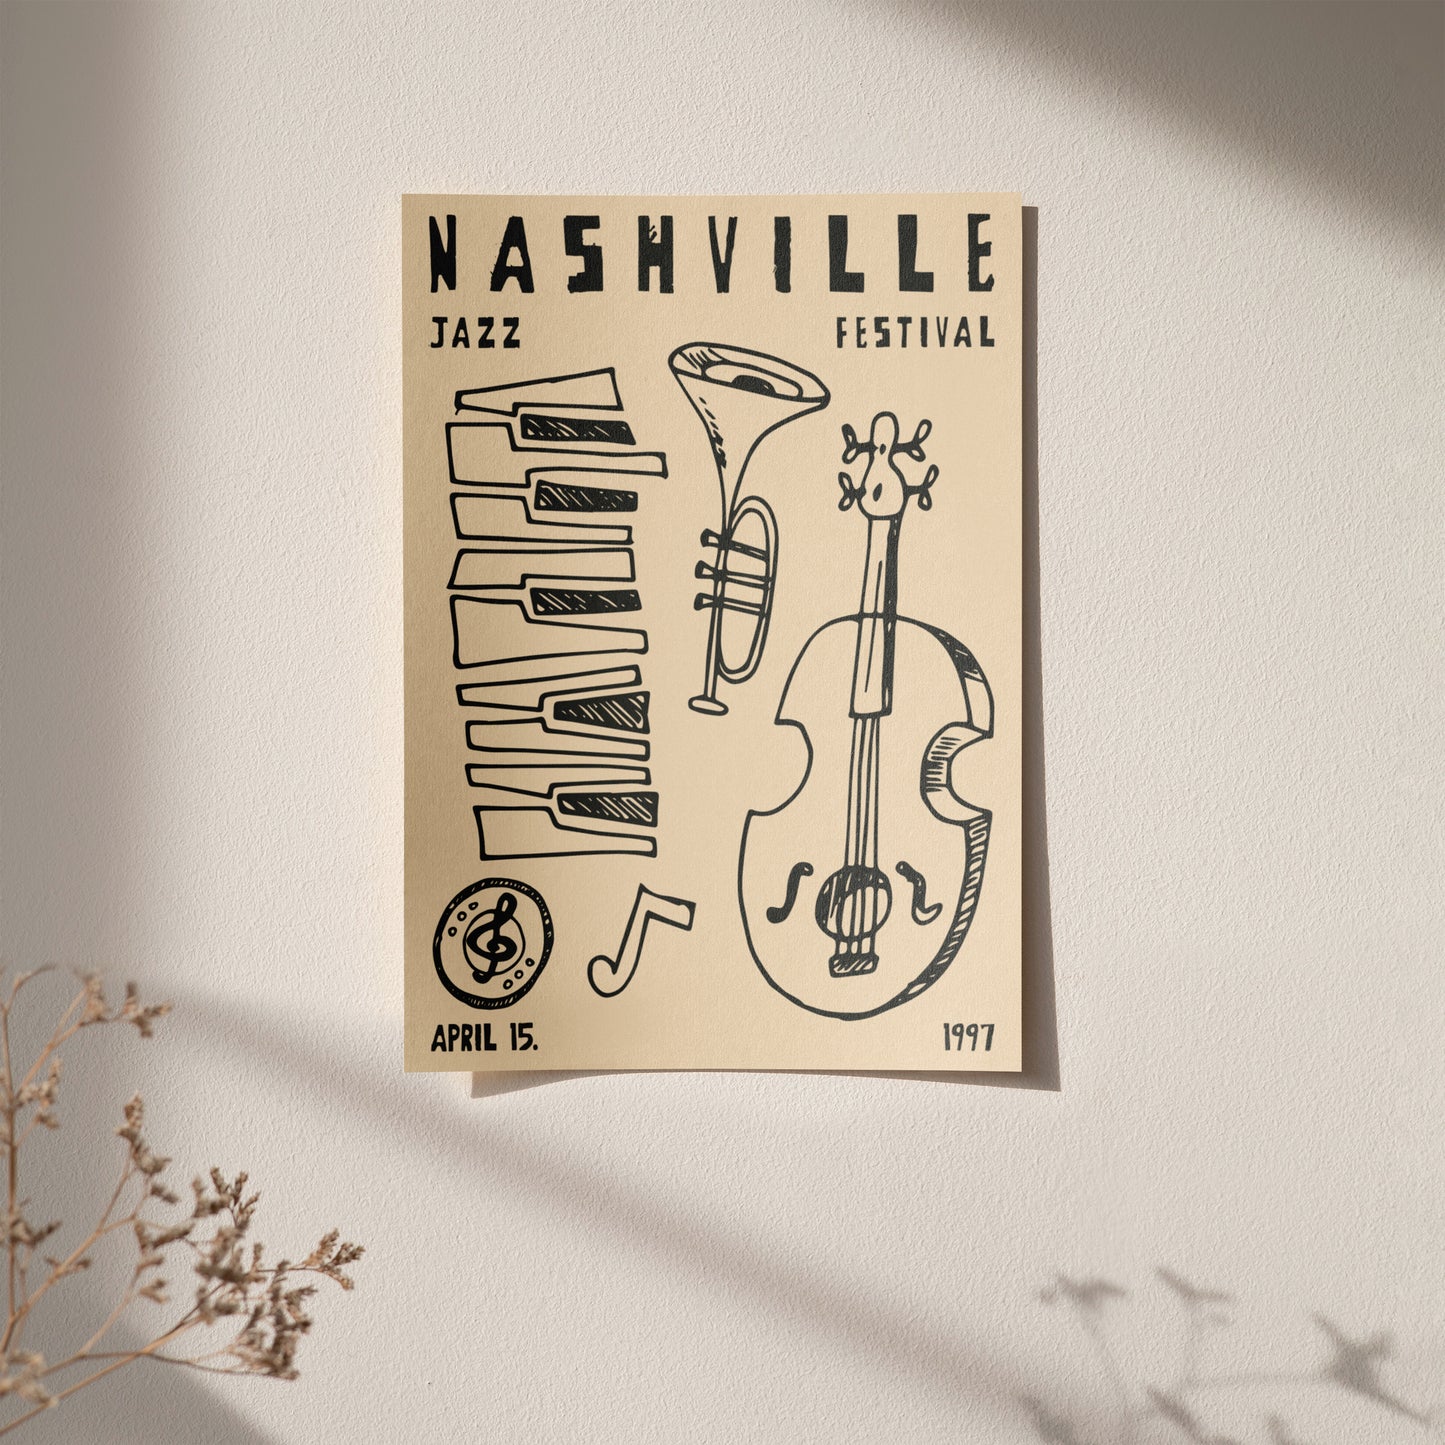 Nashville Jazz Festival poster